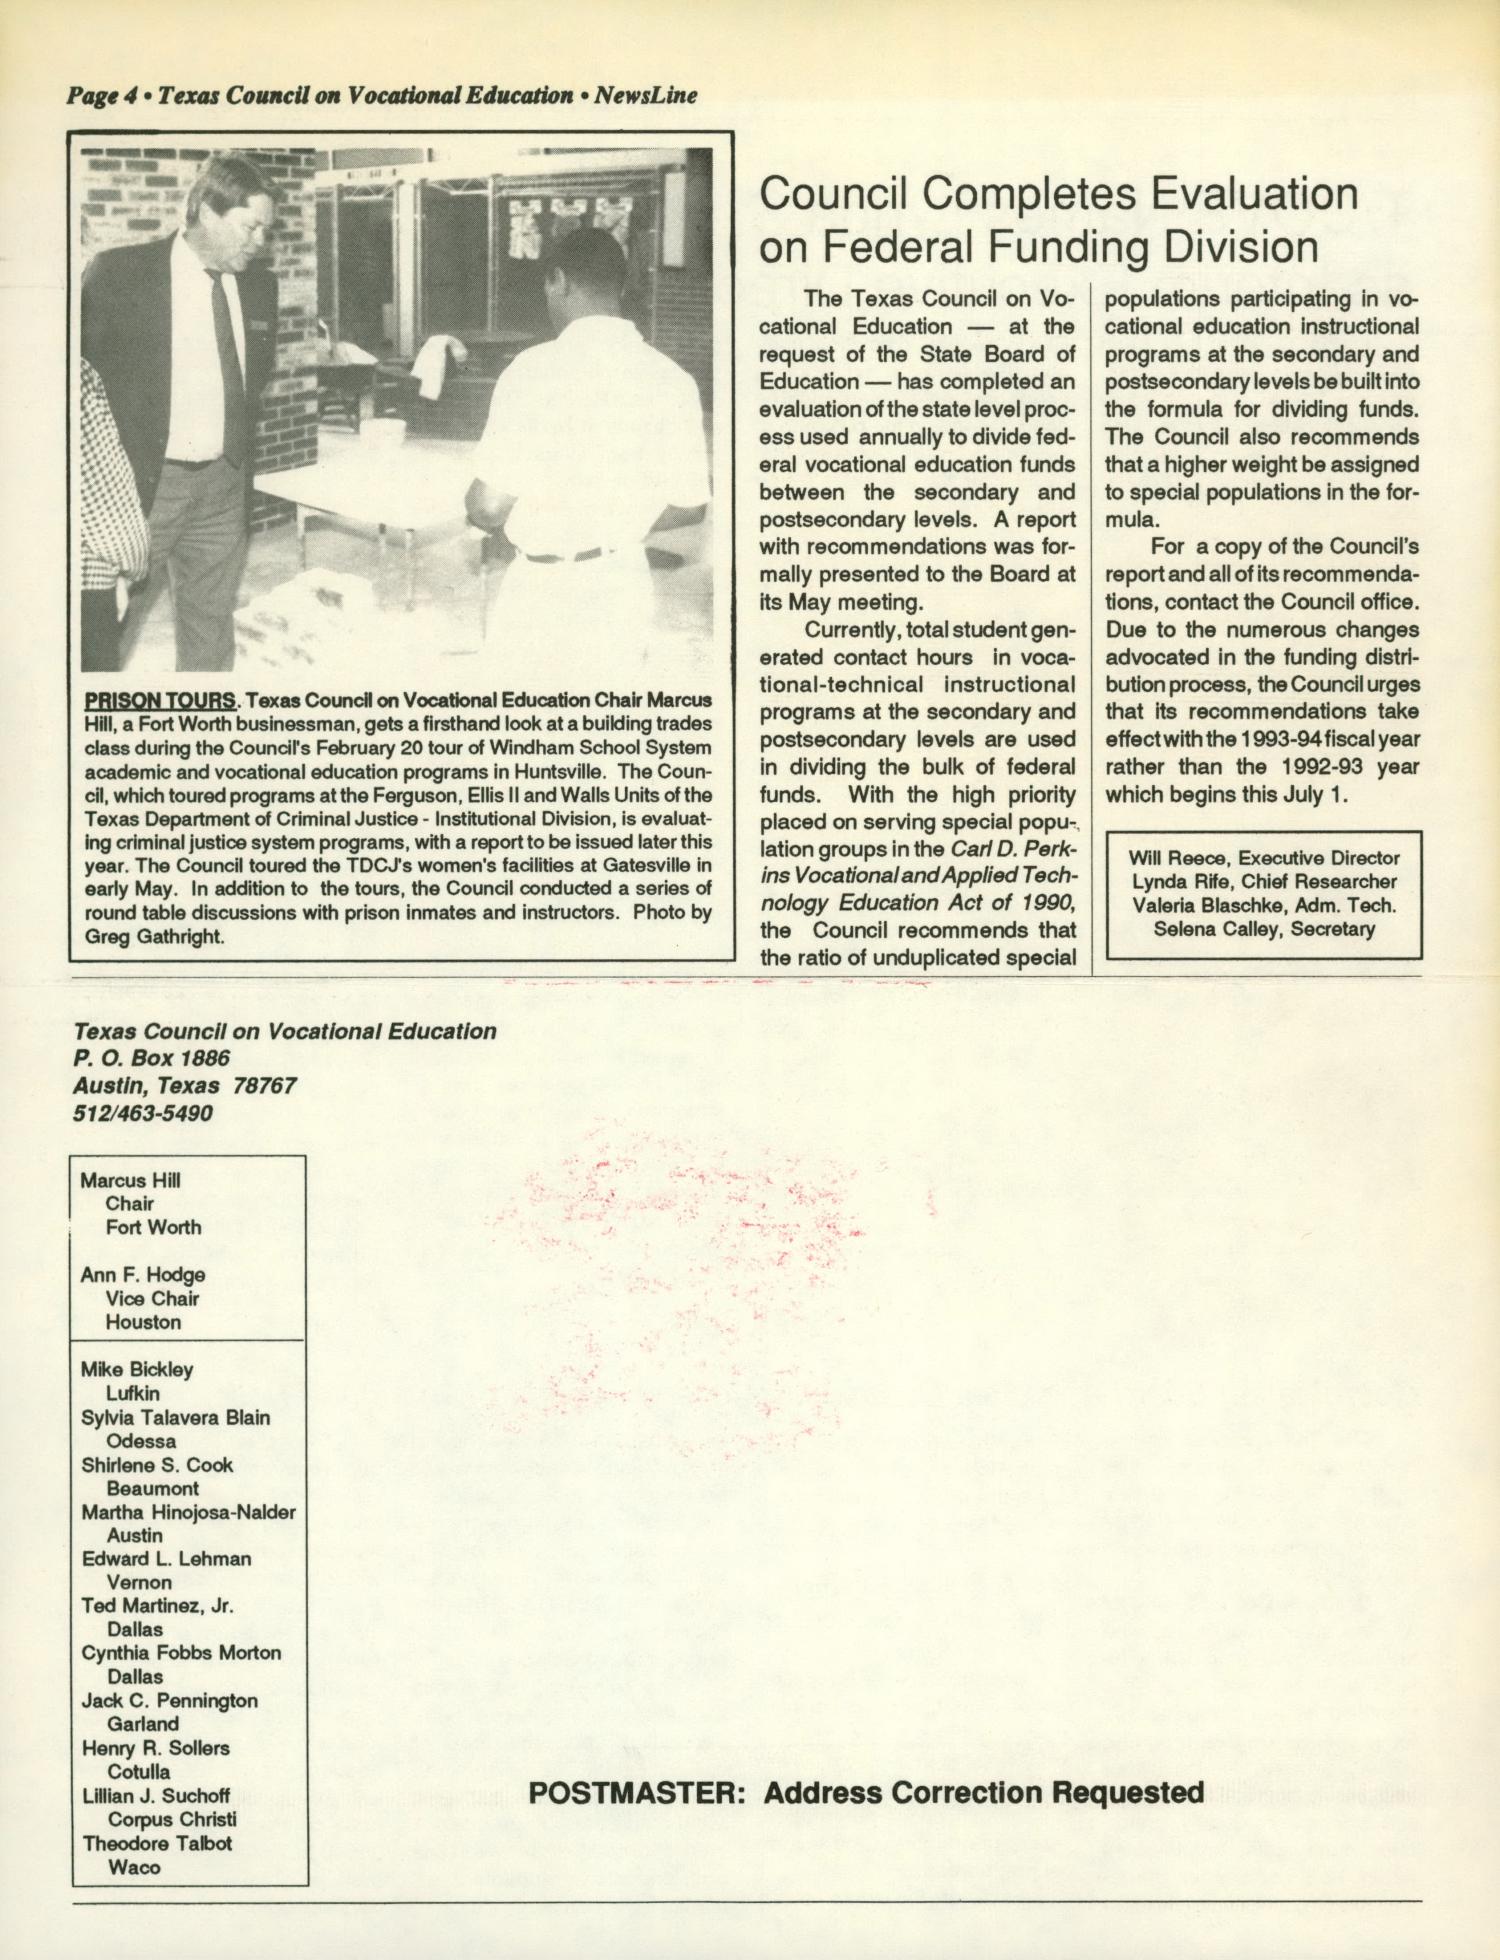 NewsLine, Volume 23, Number 3, June 1996
                                                
                                                    BACK COVER
                                                